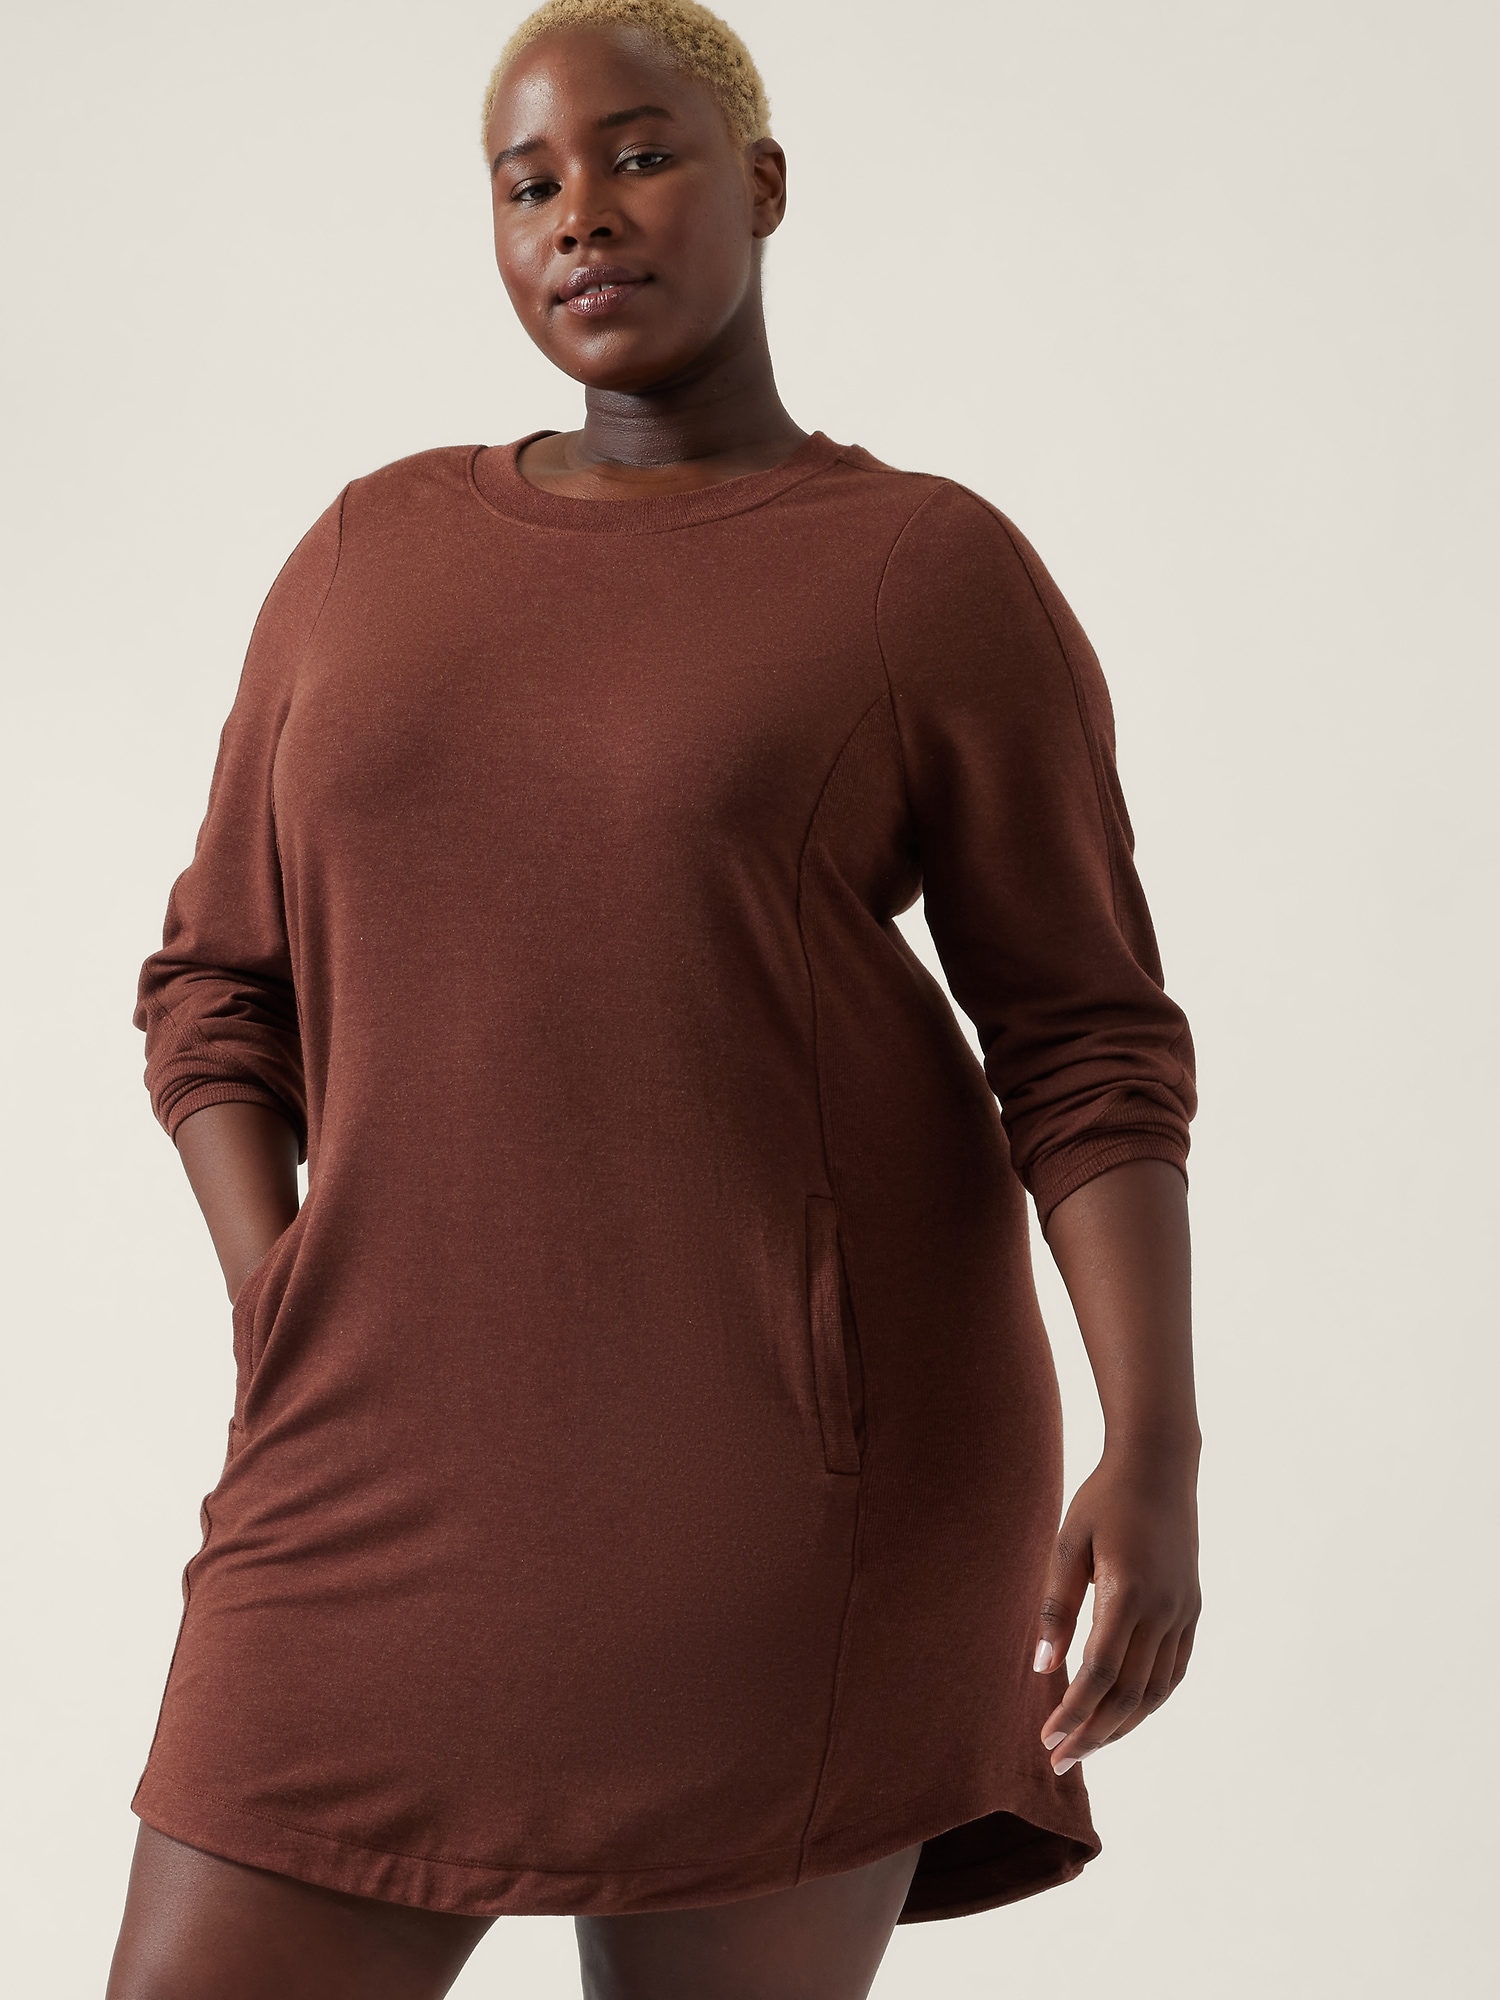 ATHLETA Balance Dress ST Small Tall S T | Black Sweatshirt Dress #599867 NEW